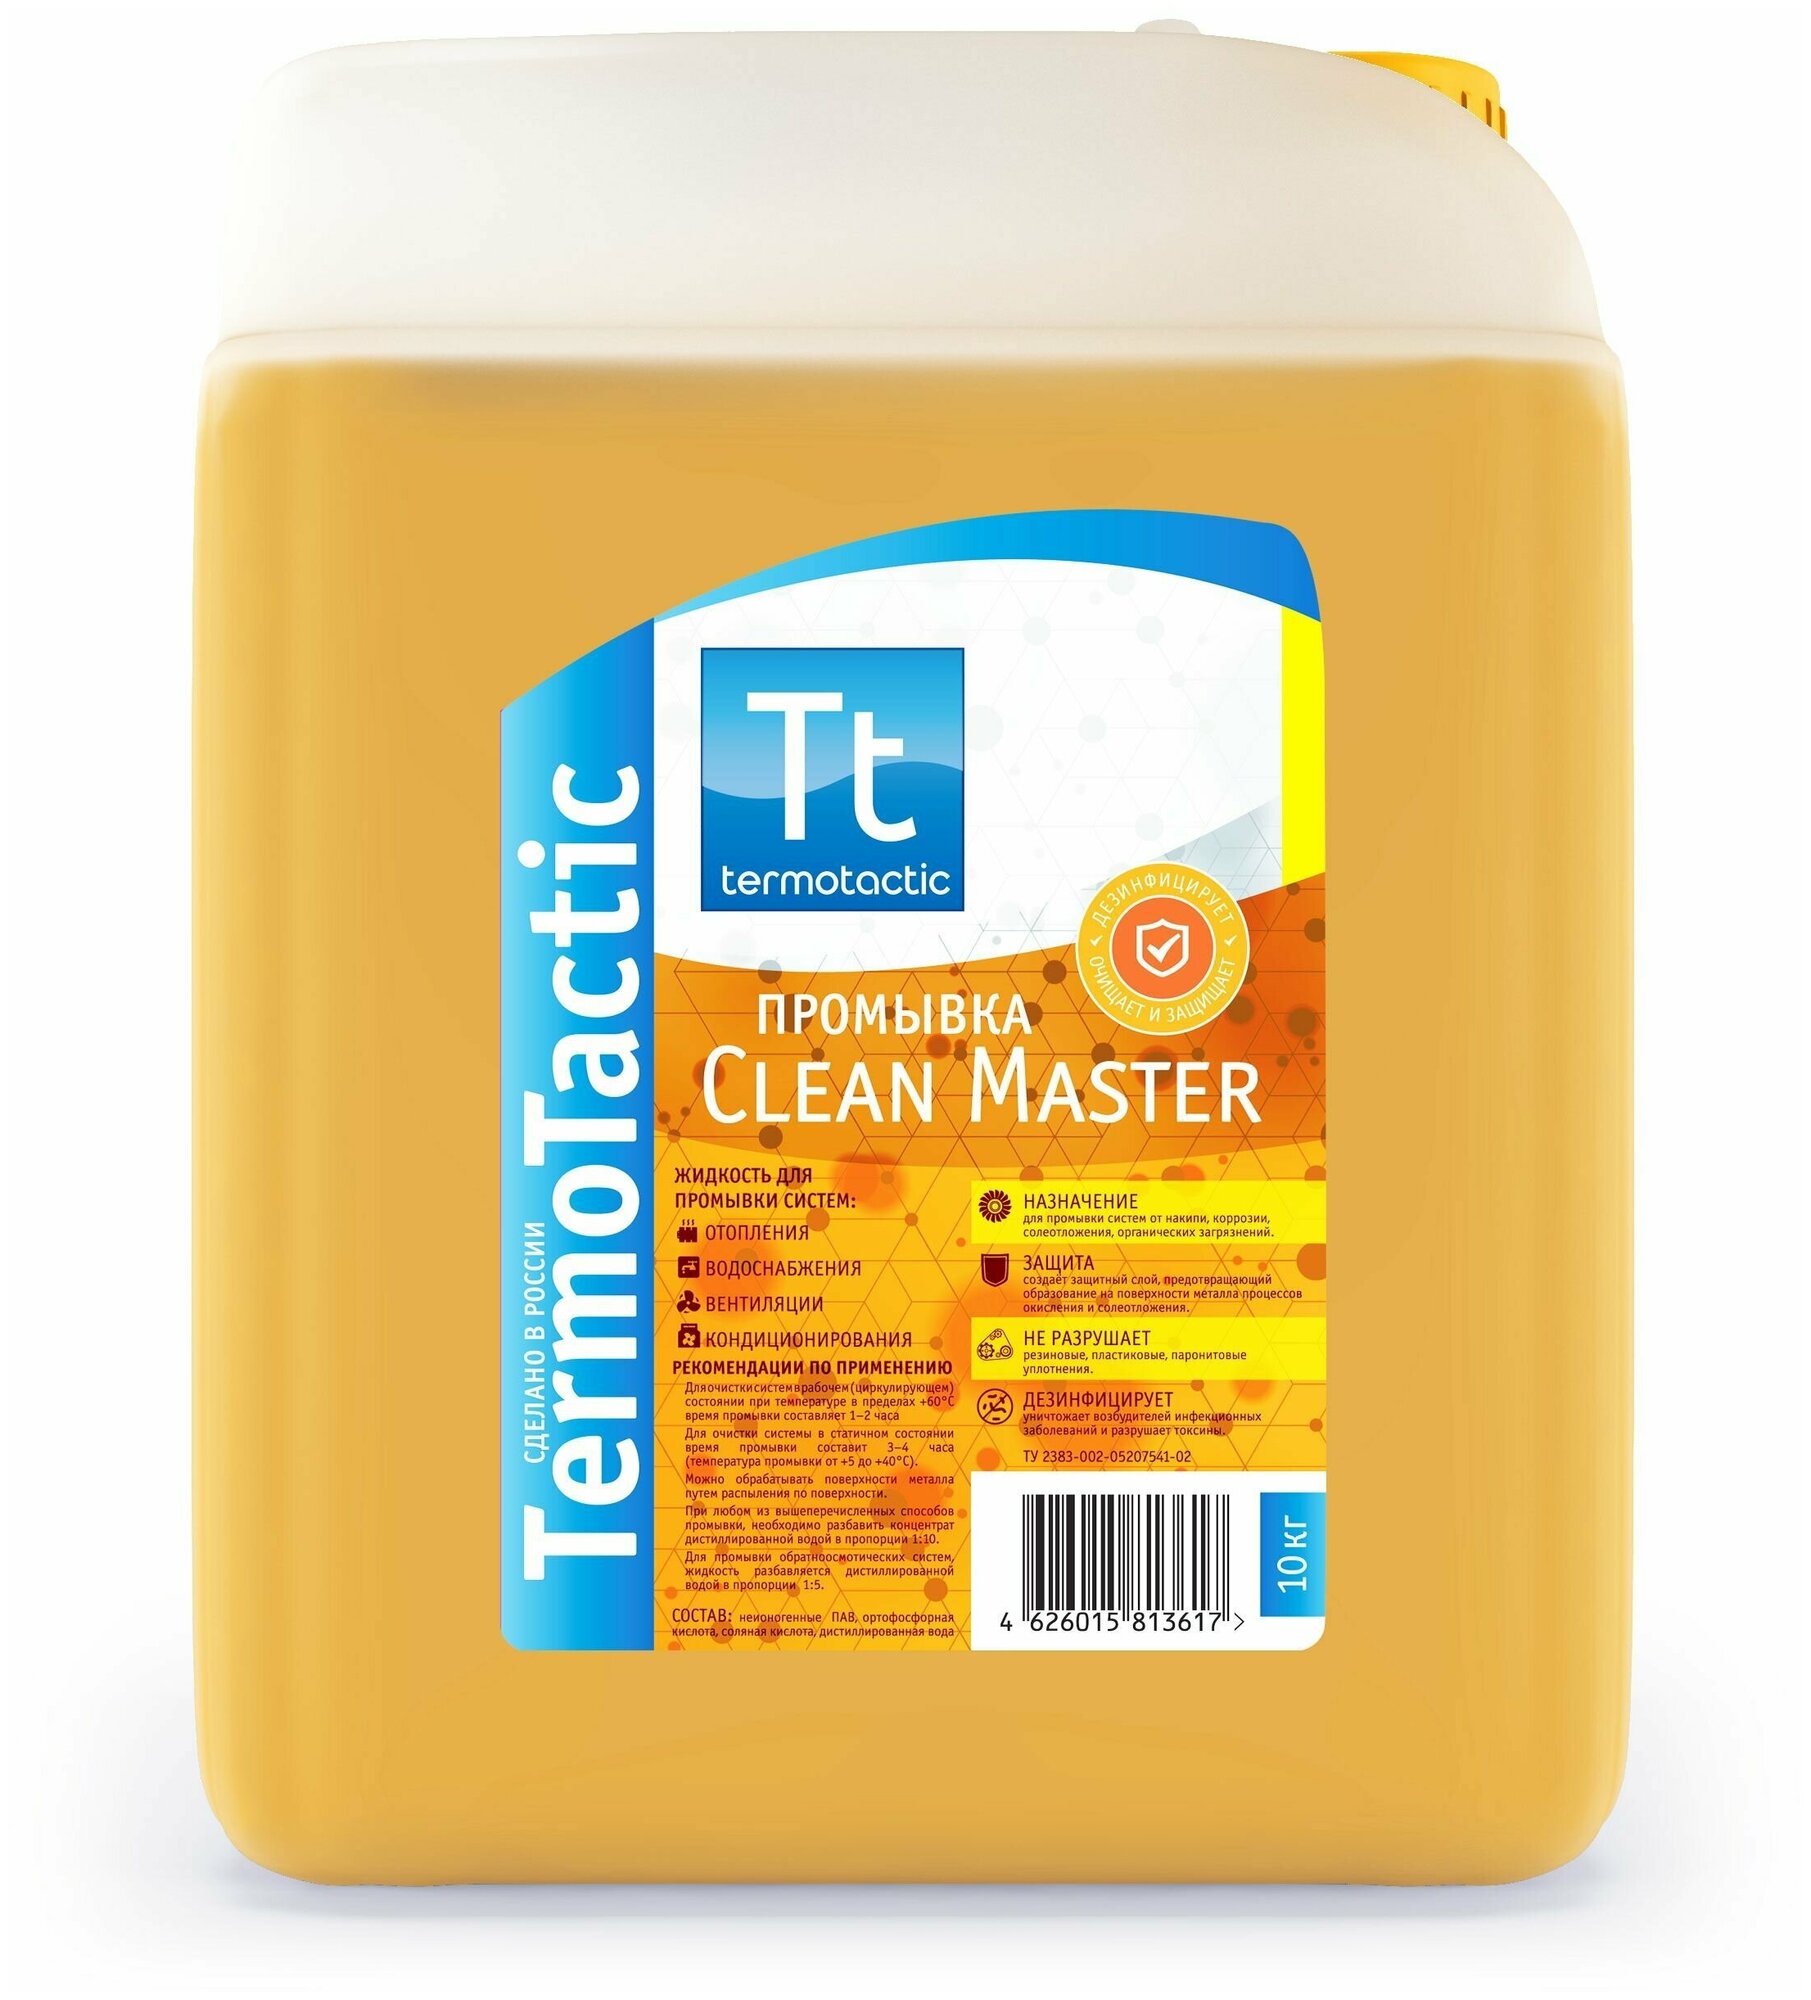 Жидкость для промывки систем отопления TermoTactic "Clean Master" 10 литров (концентрат)